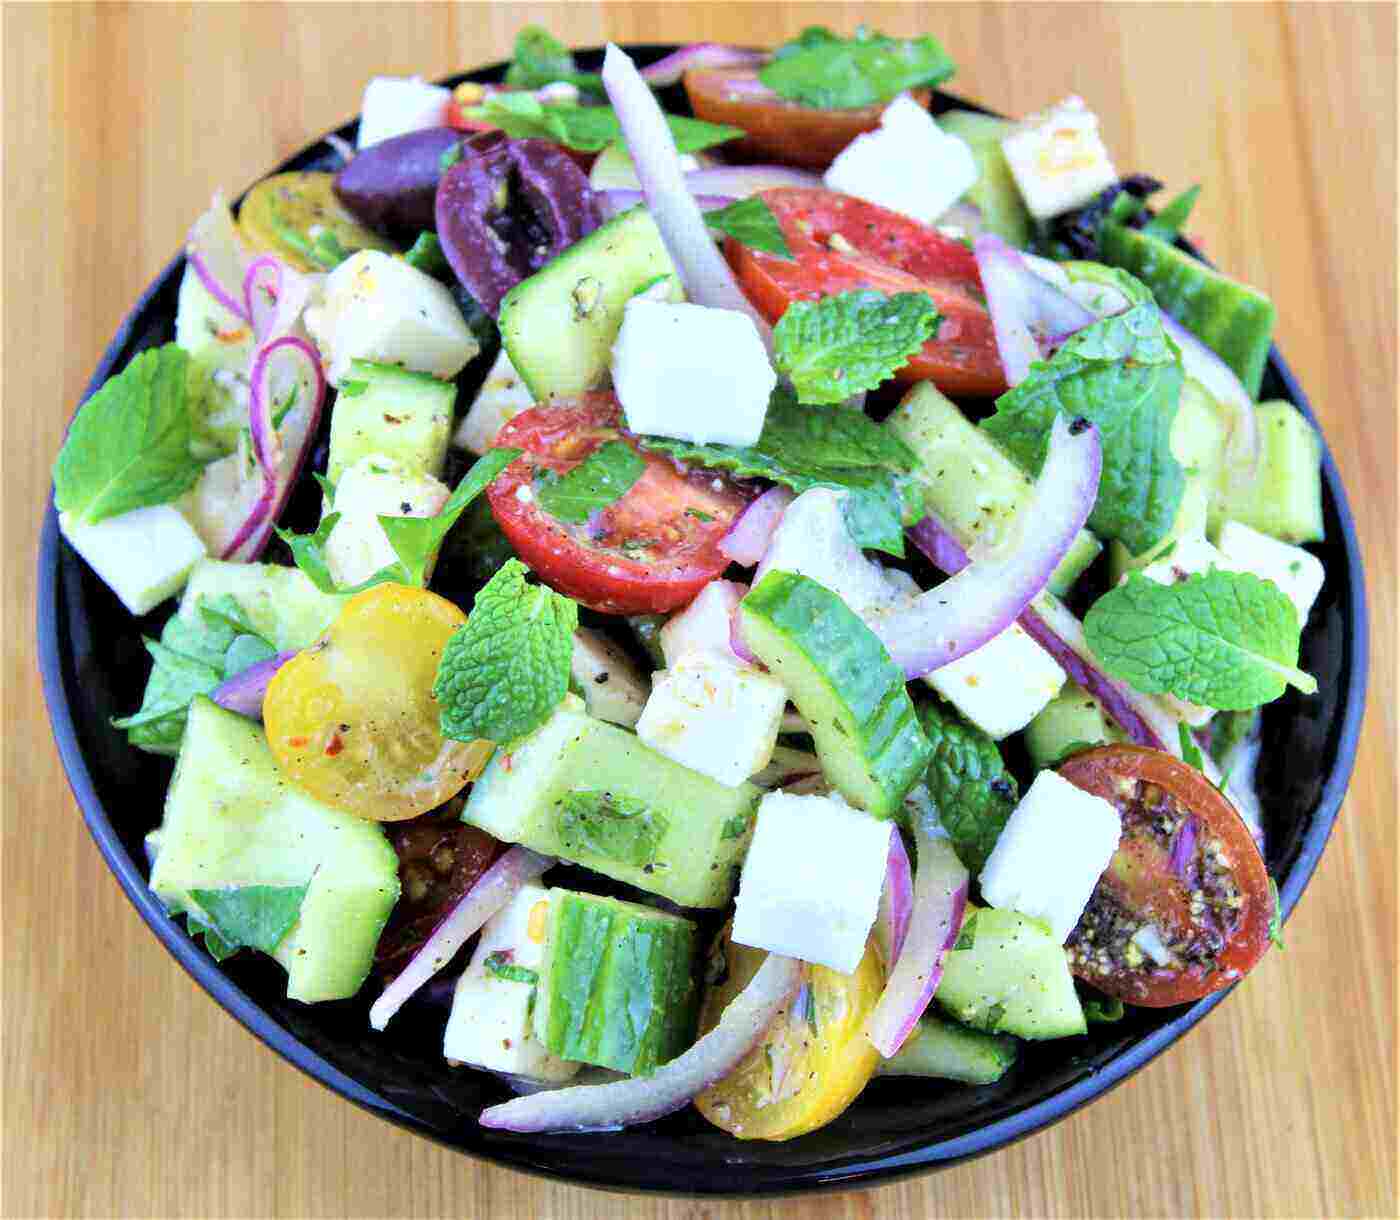 insalata greca - insalata greca tradizionale con ricetta vinaigrette al limone ed erbe